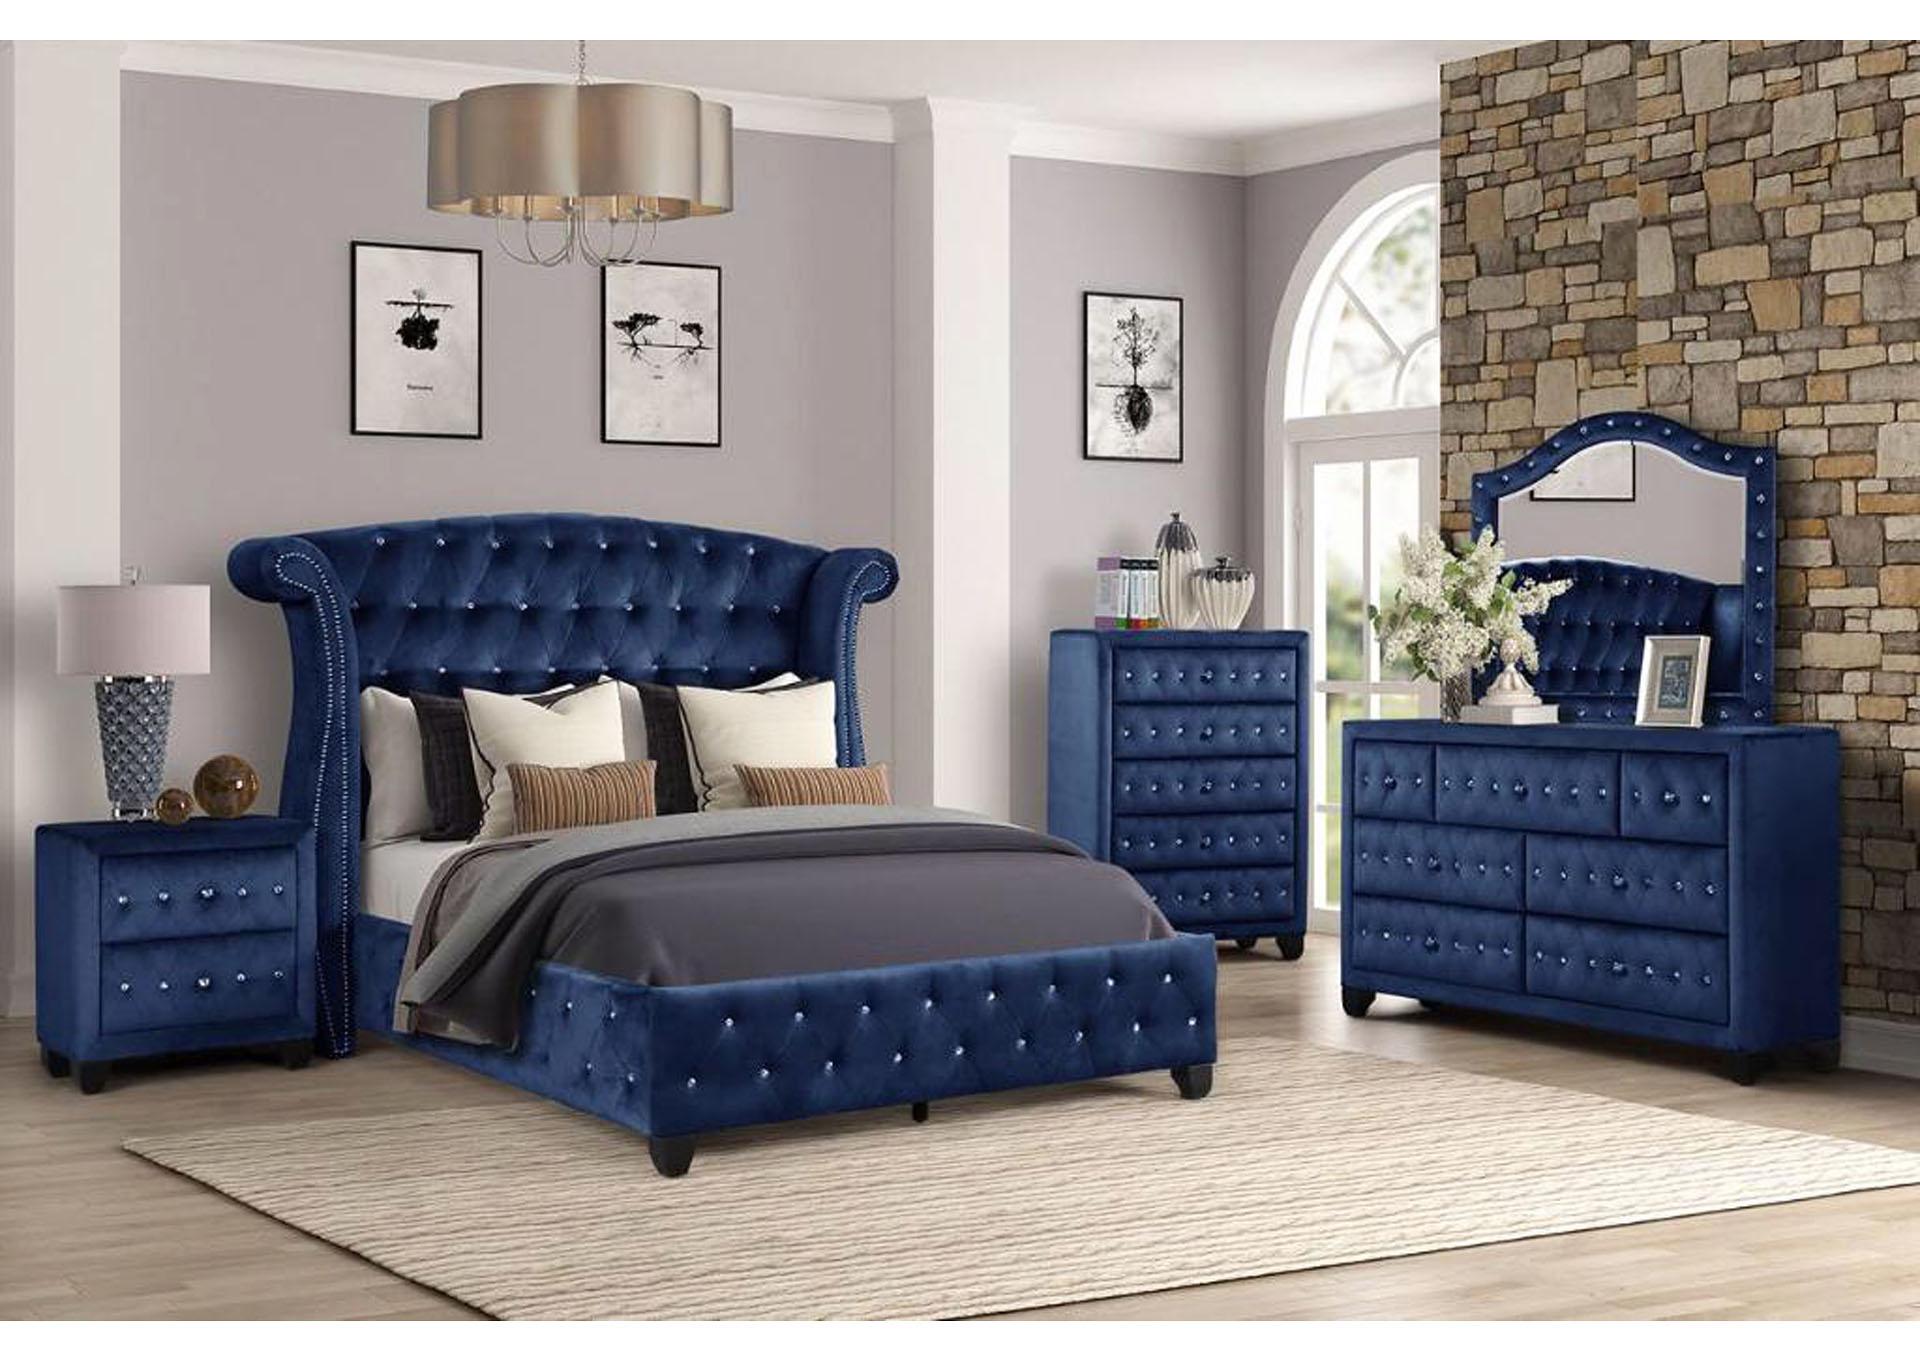 

    
Blue Velvet Tufted Full Bedroom Set 4P SOPHIA Galaxy Home Modern Contemporary
